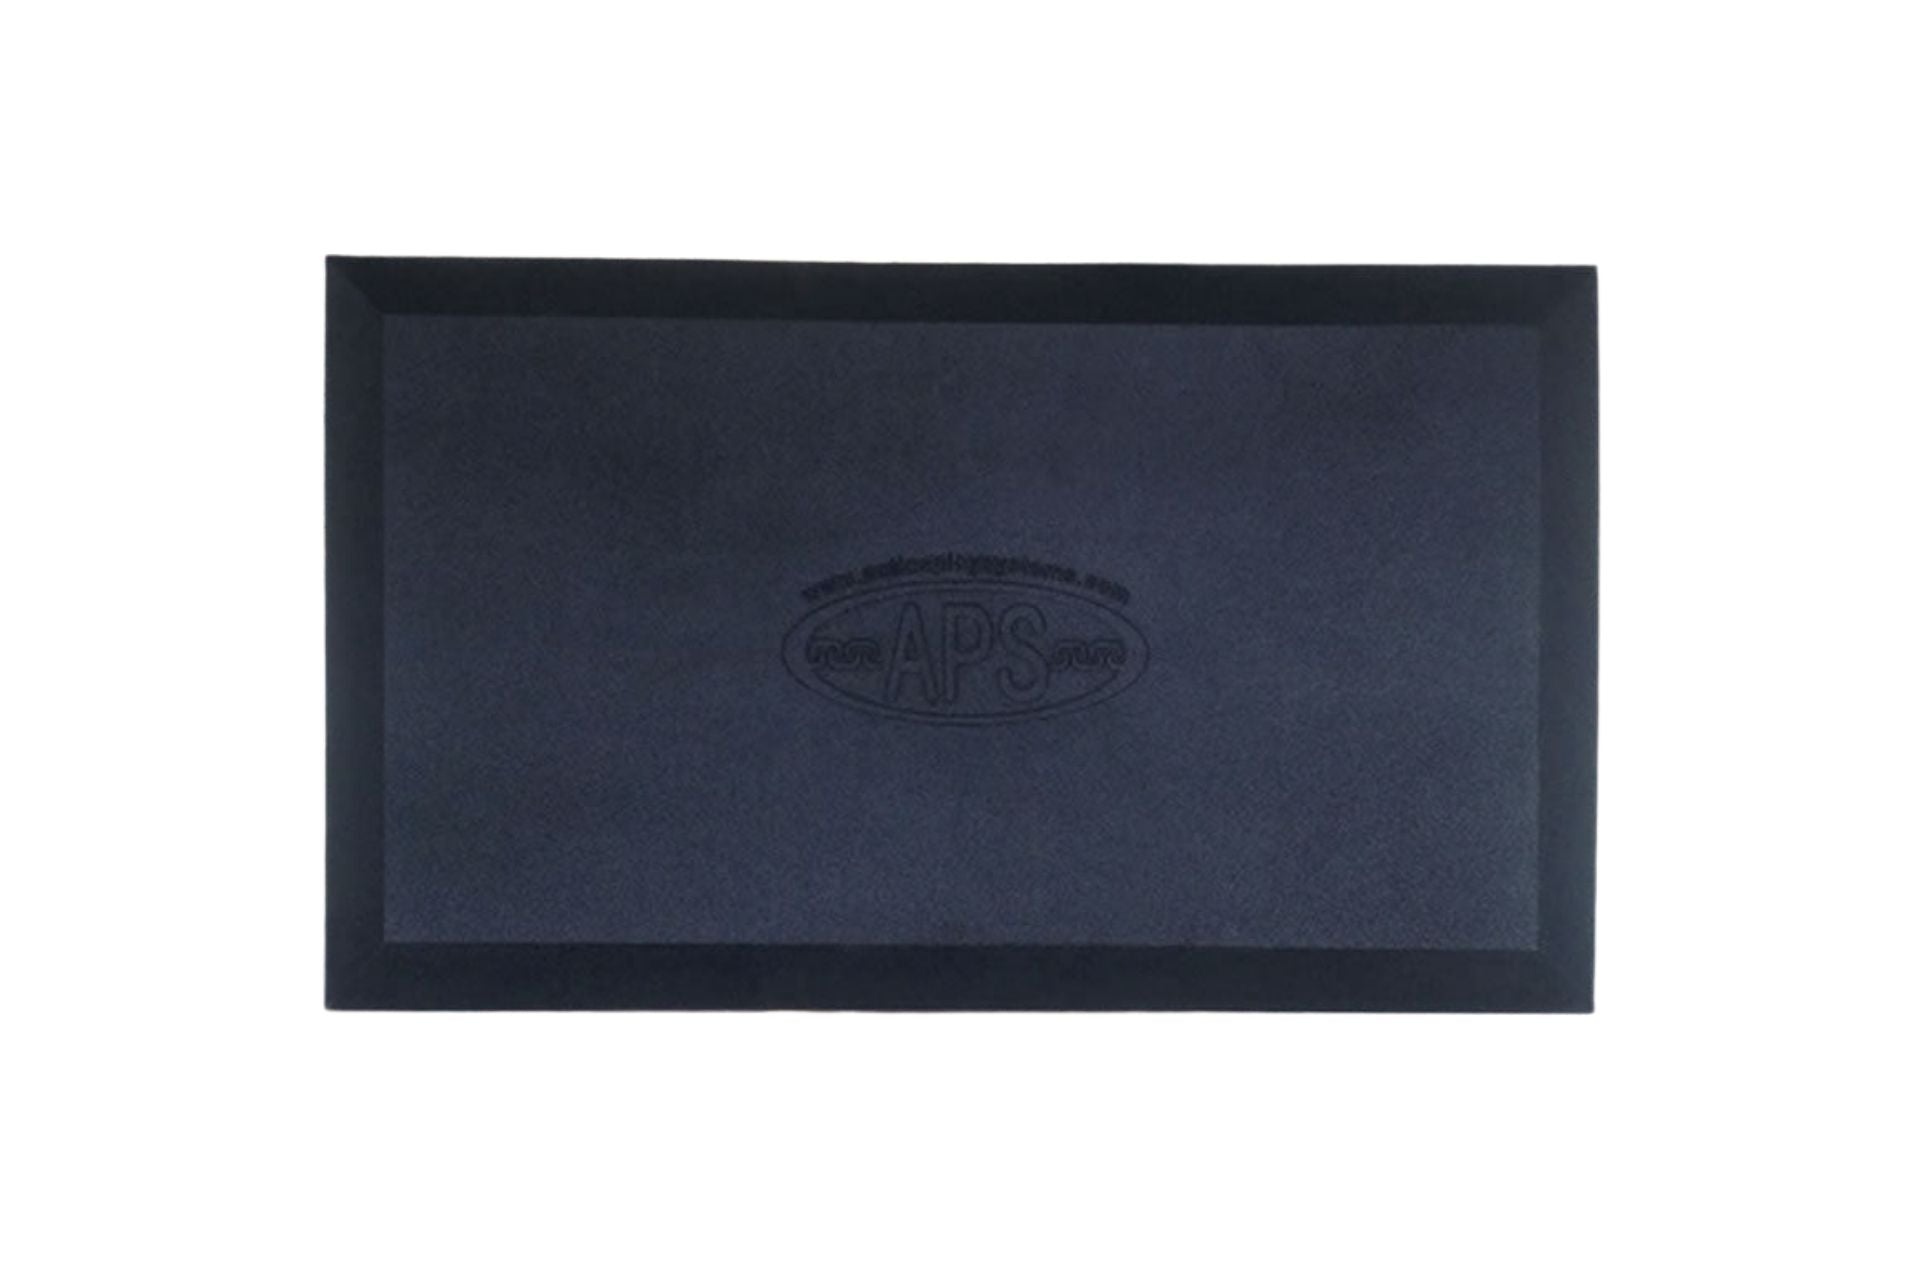 Envelor Home Hollow Rubber Doormat, Black